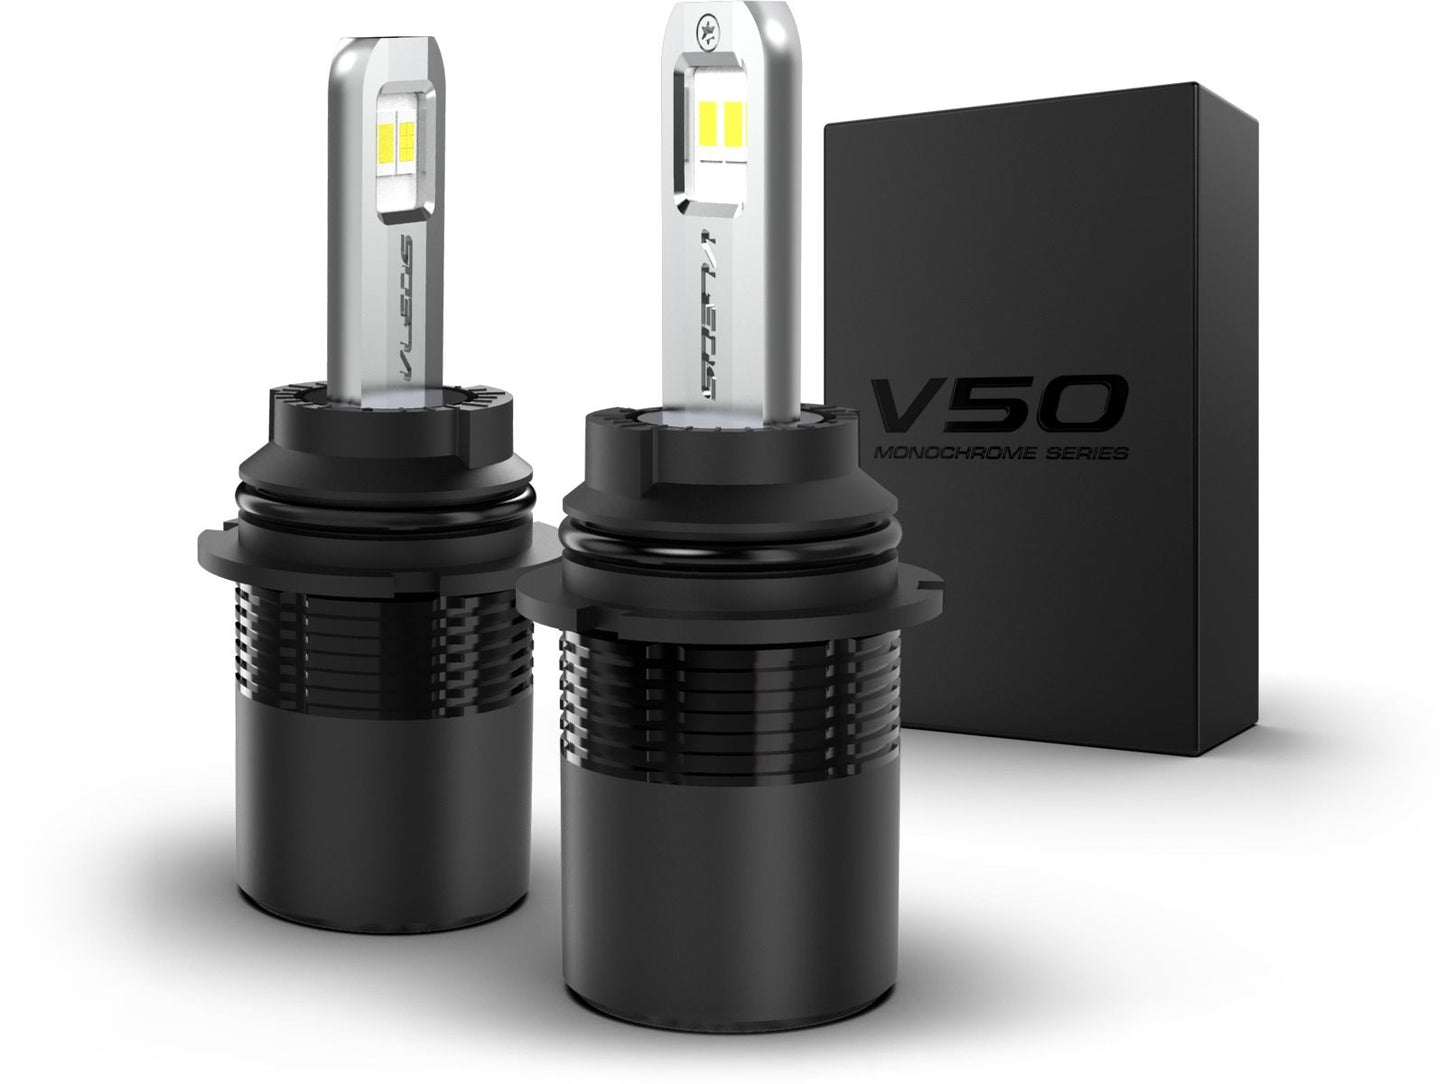 9004: VLEDS V50 Monochrome Series